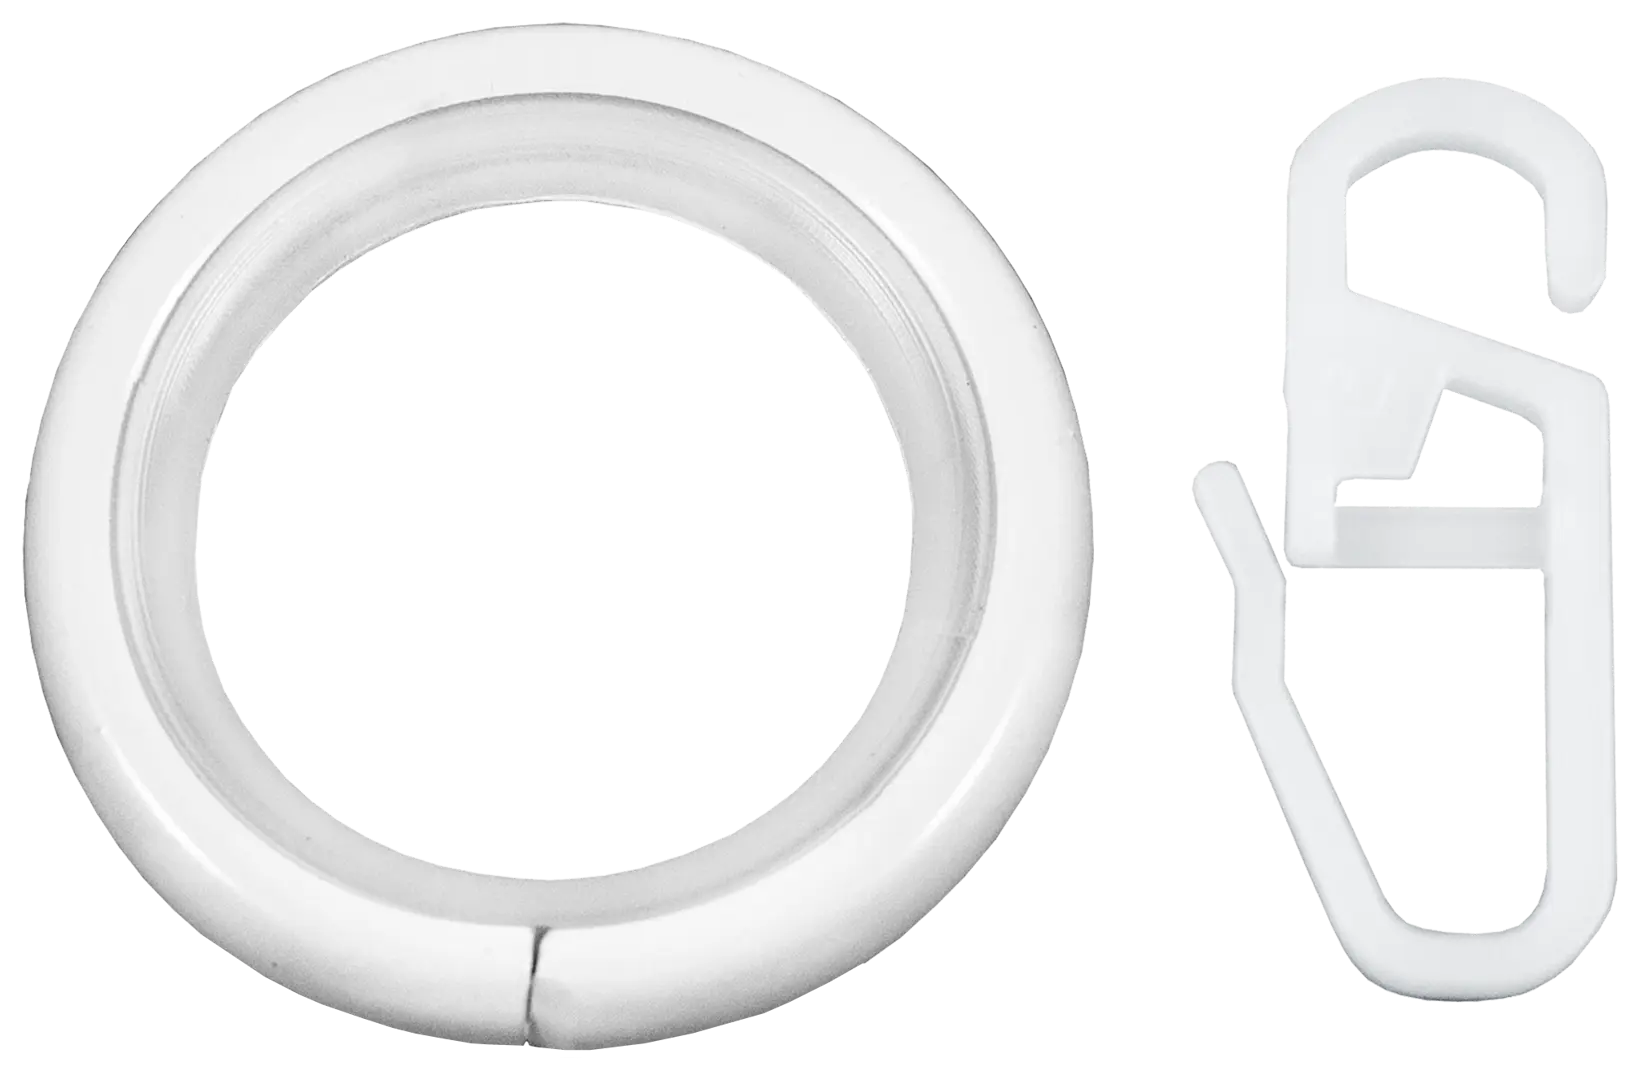 Кольцо с крючком металл цвет белый глянец, 2 см, 10 шт.